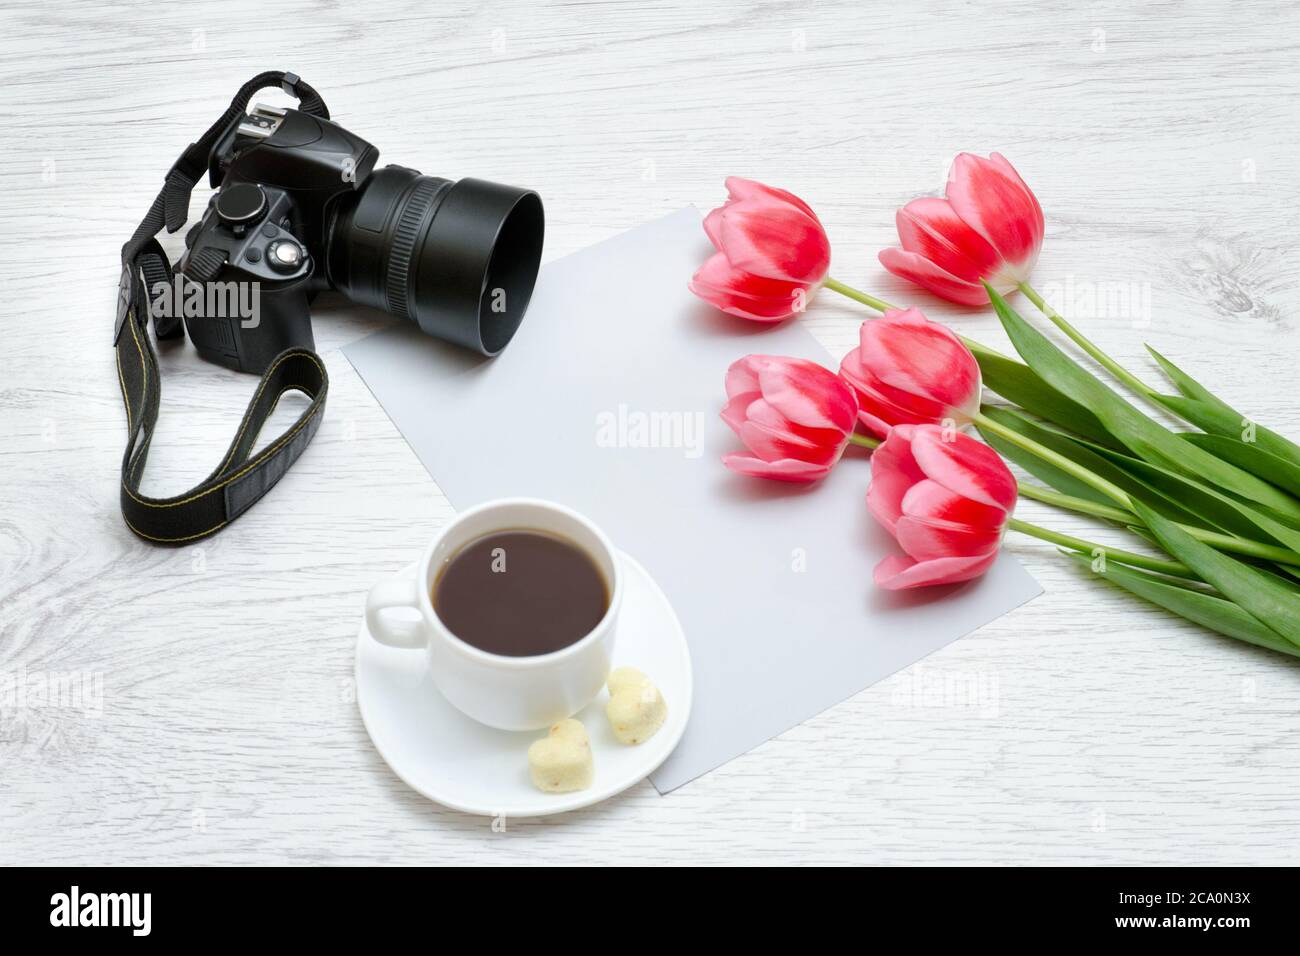 Macchina fotografica, tazza di caffè e tullips rosa. Sfondo di legno Foto Stock